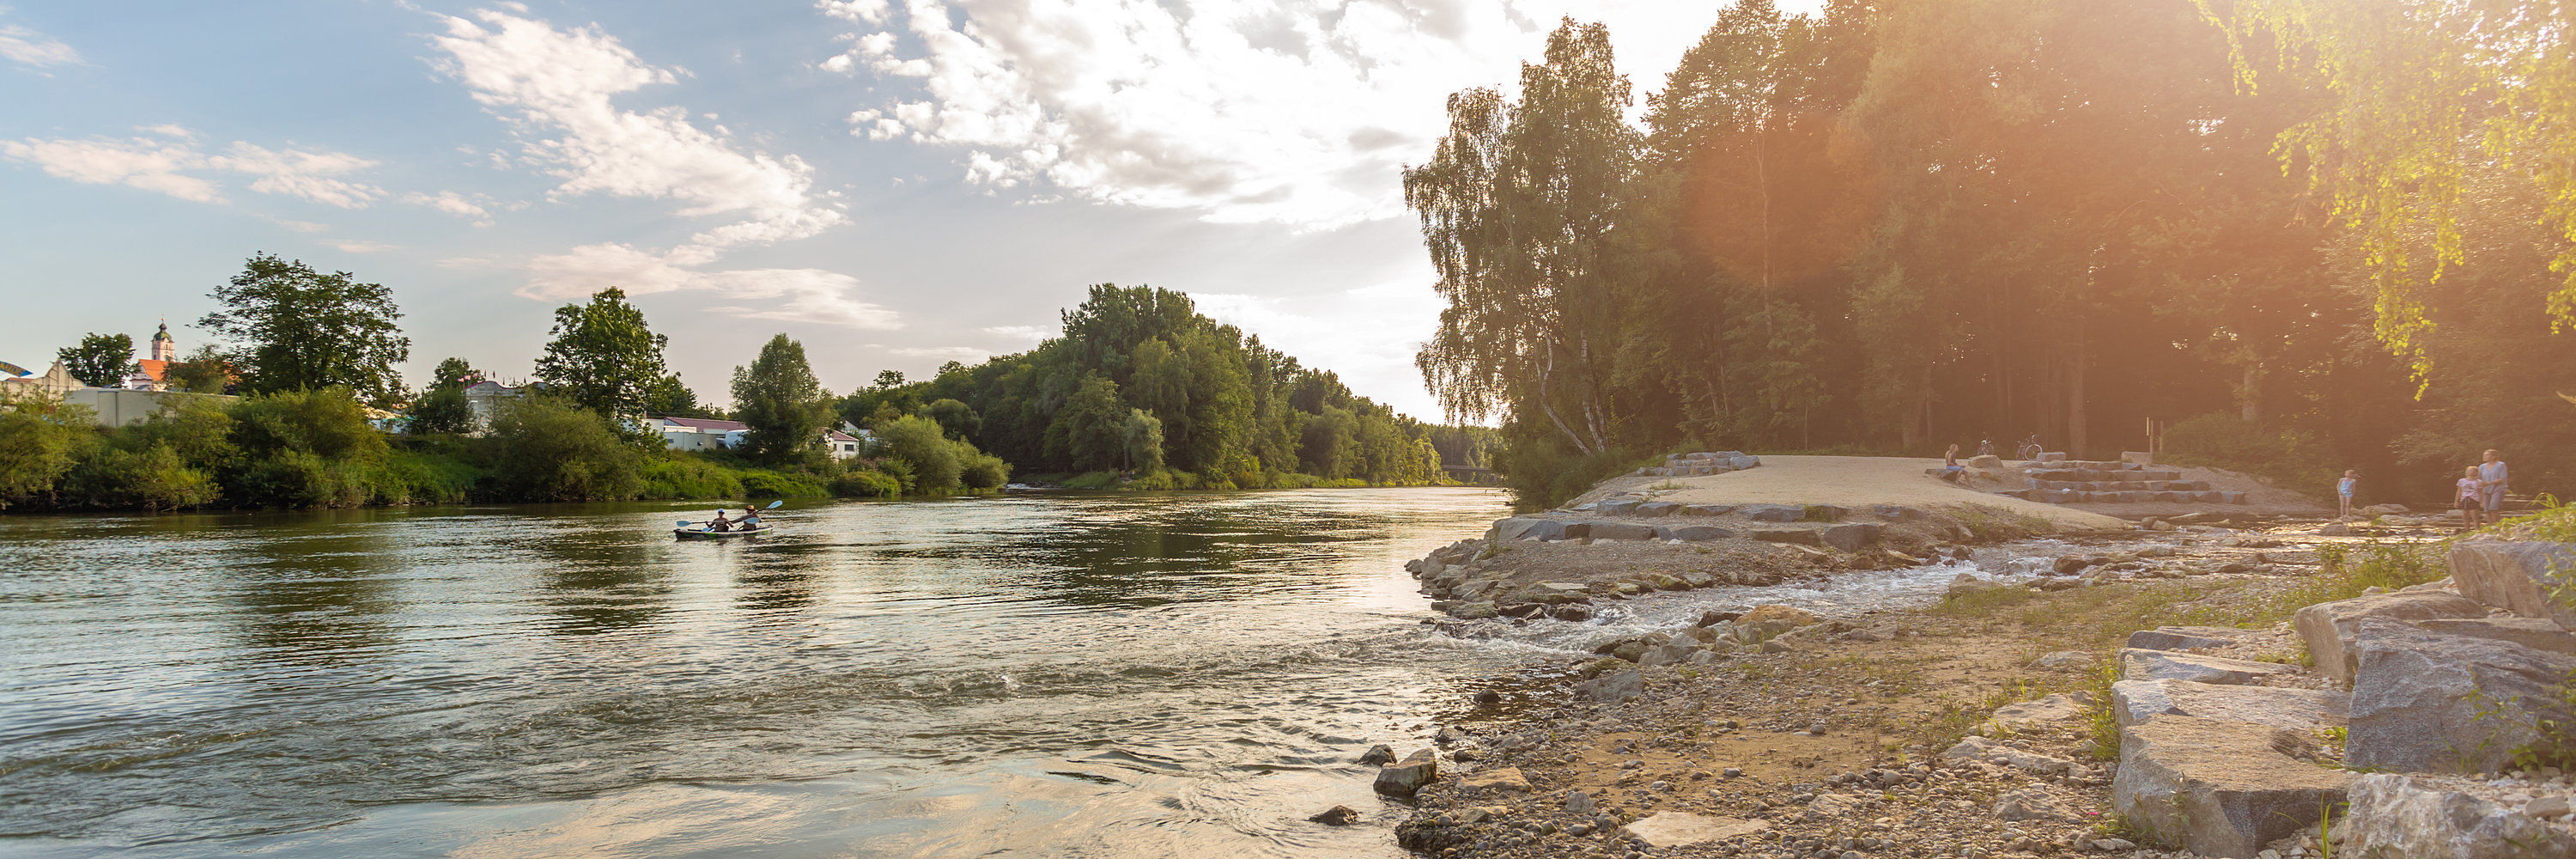 Naueinmündung in die Donau. Foto: Philipp Röger für die Stadt Günzburg